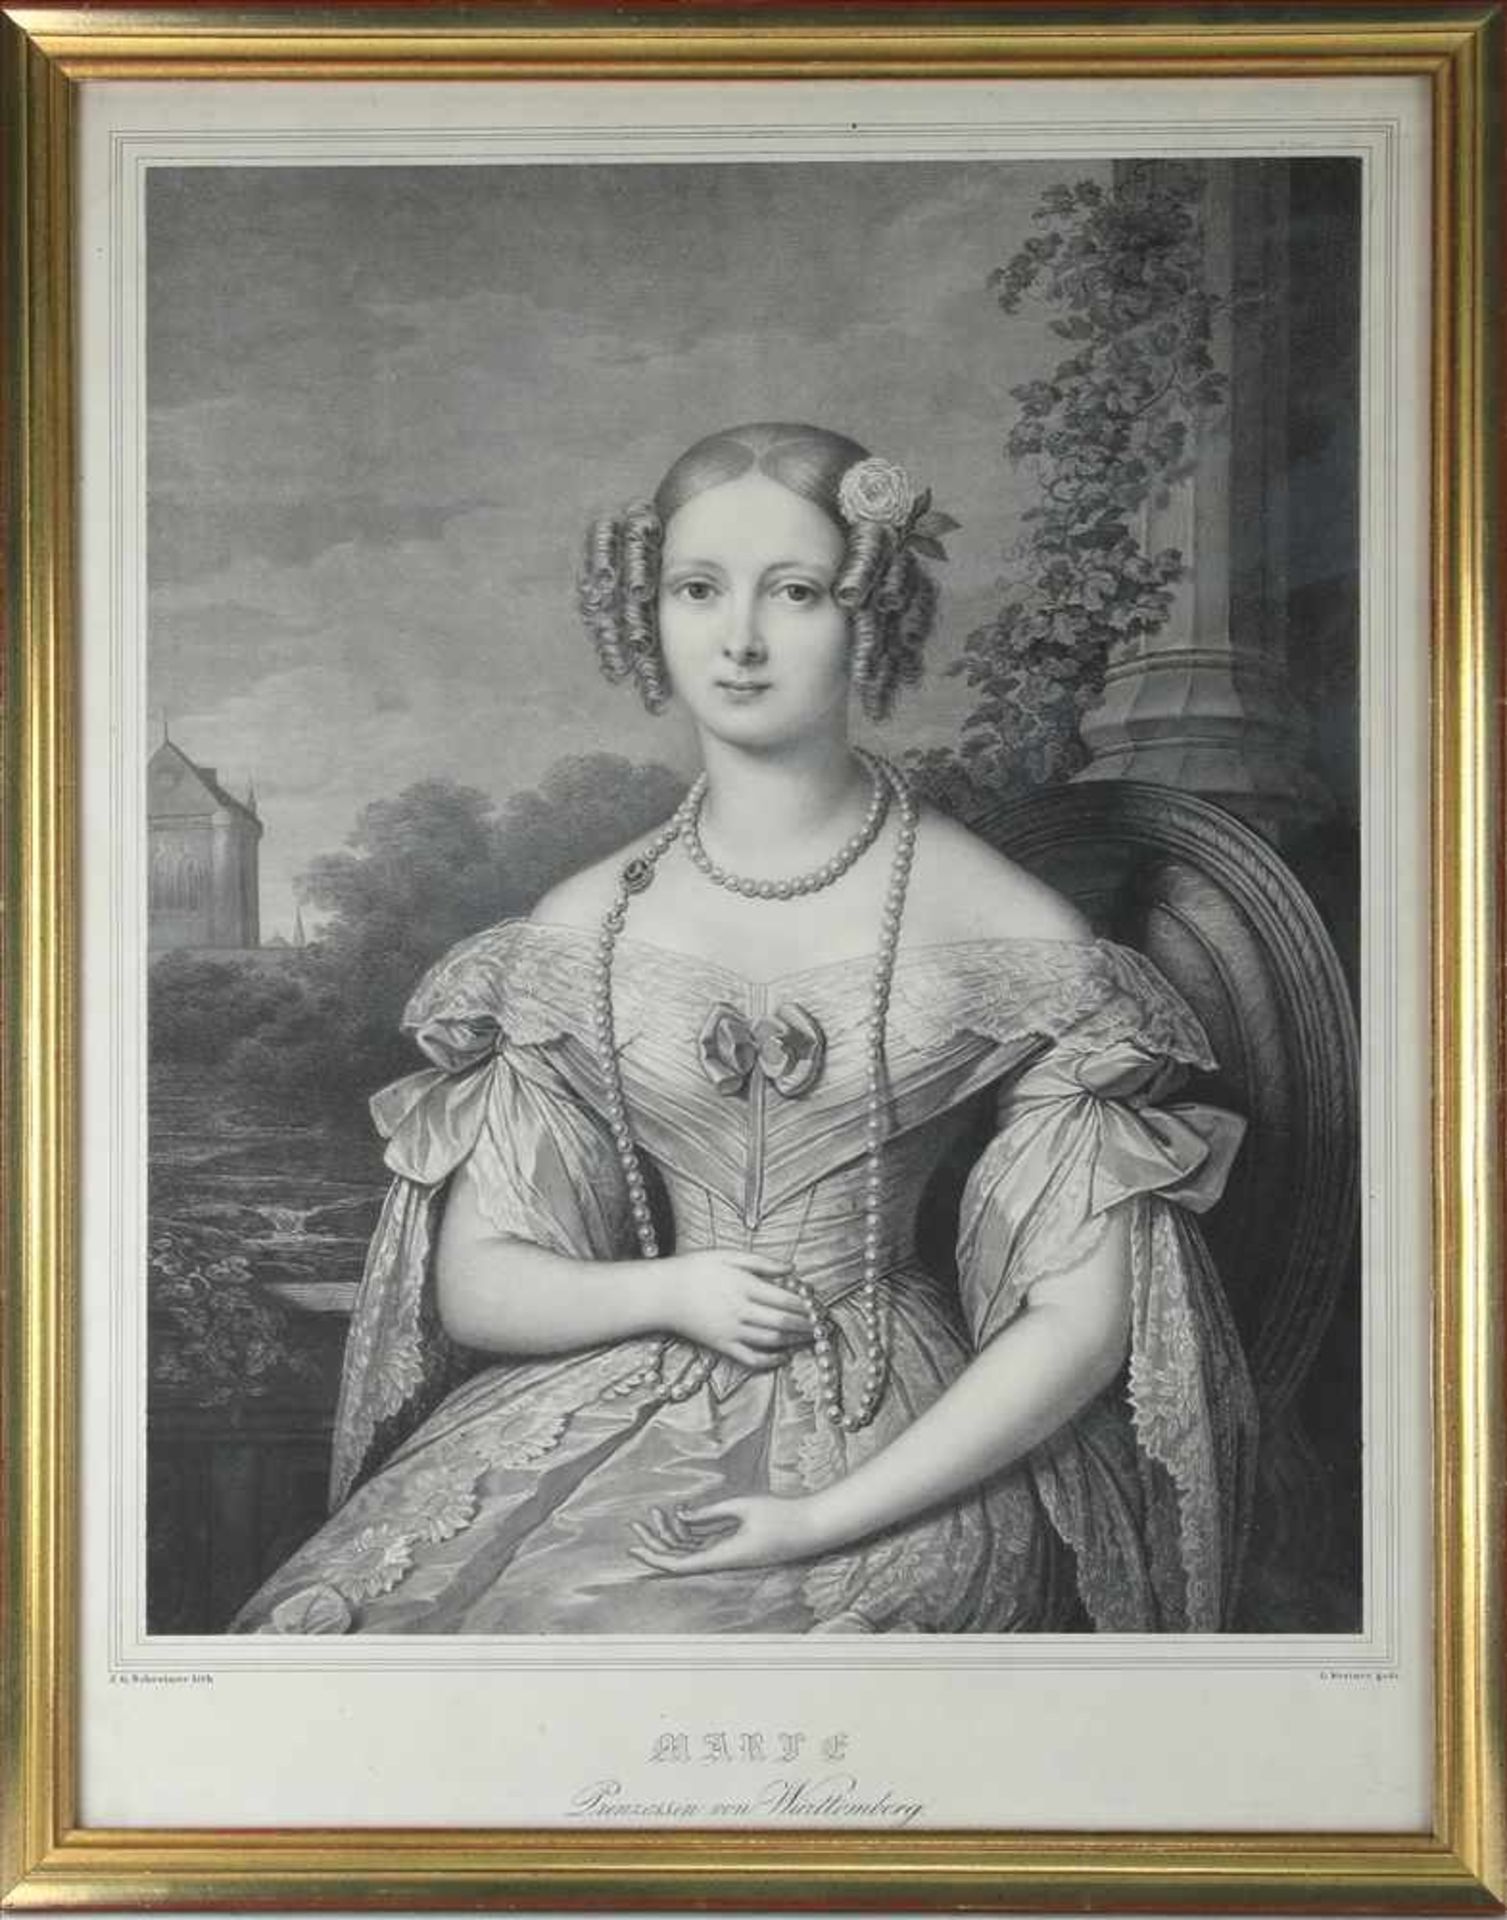 Schreiner, Johann Georg1801 Mergelstetten - 1863 München. Marie, Prinzessin von Würrtemberg. - Image 2 of 3